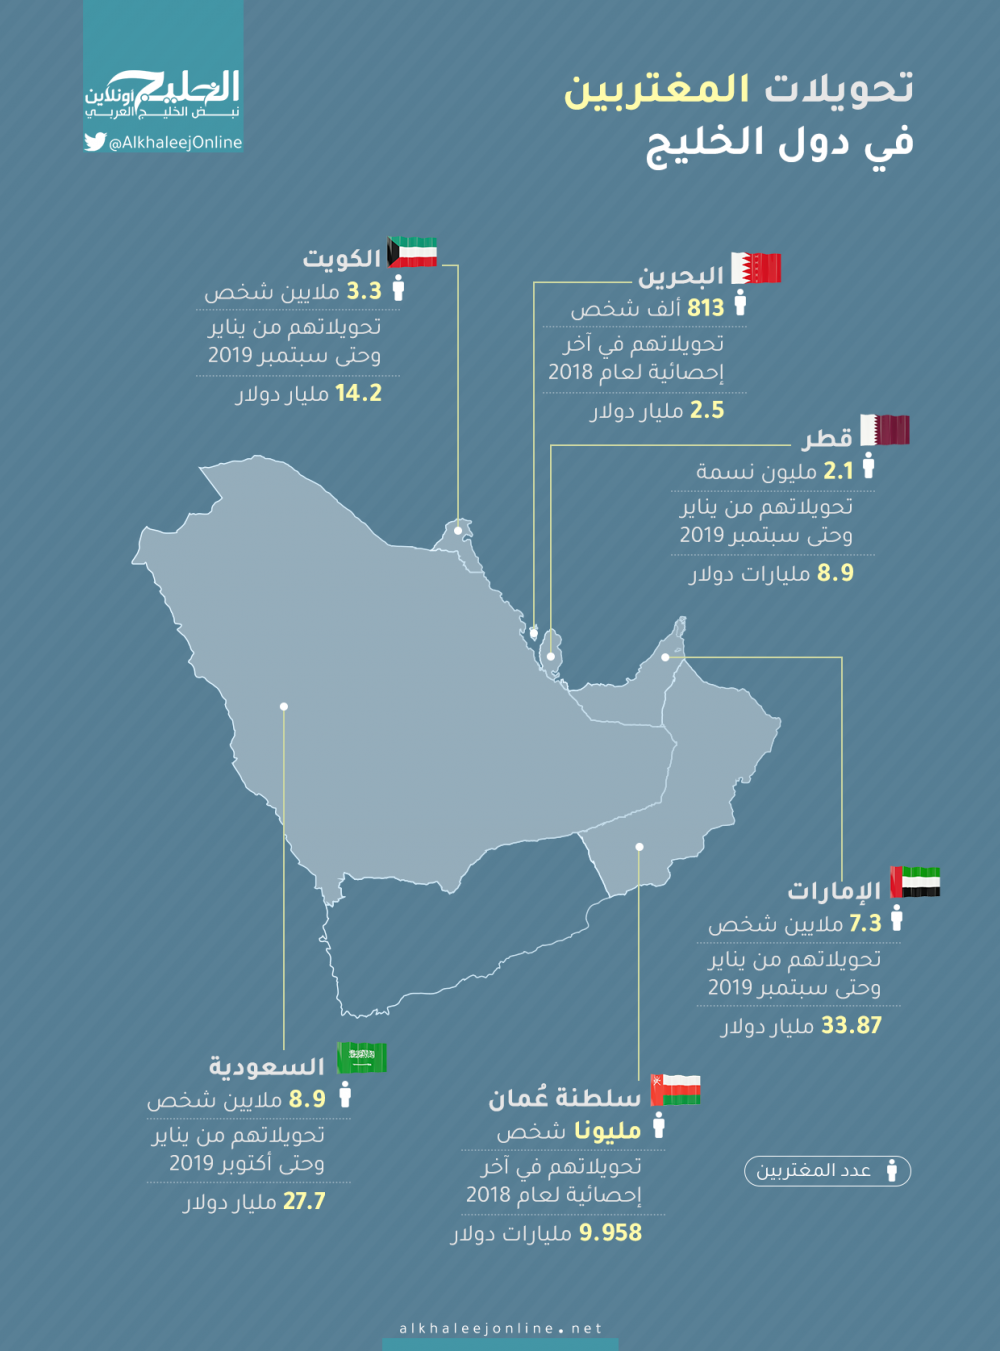 حجم حواله های ارسال شده به خارج از کشور در جنوب خلیج فارس